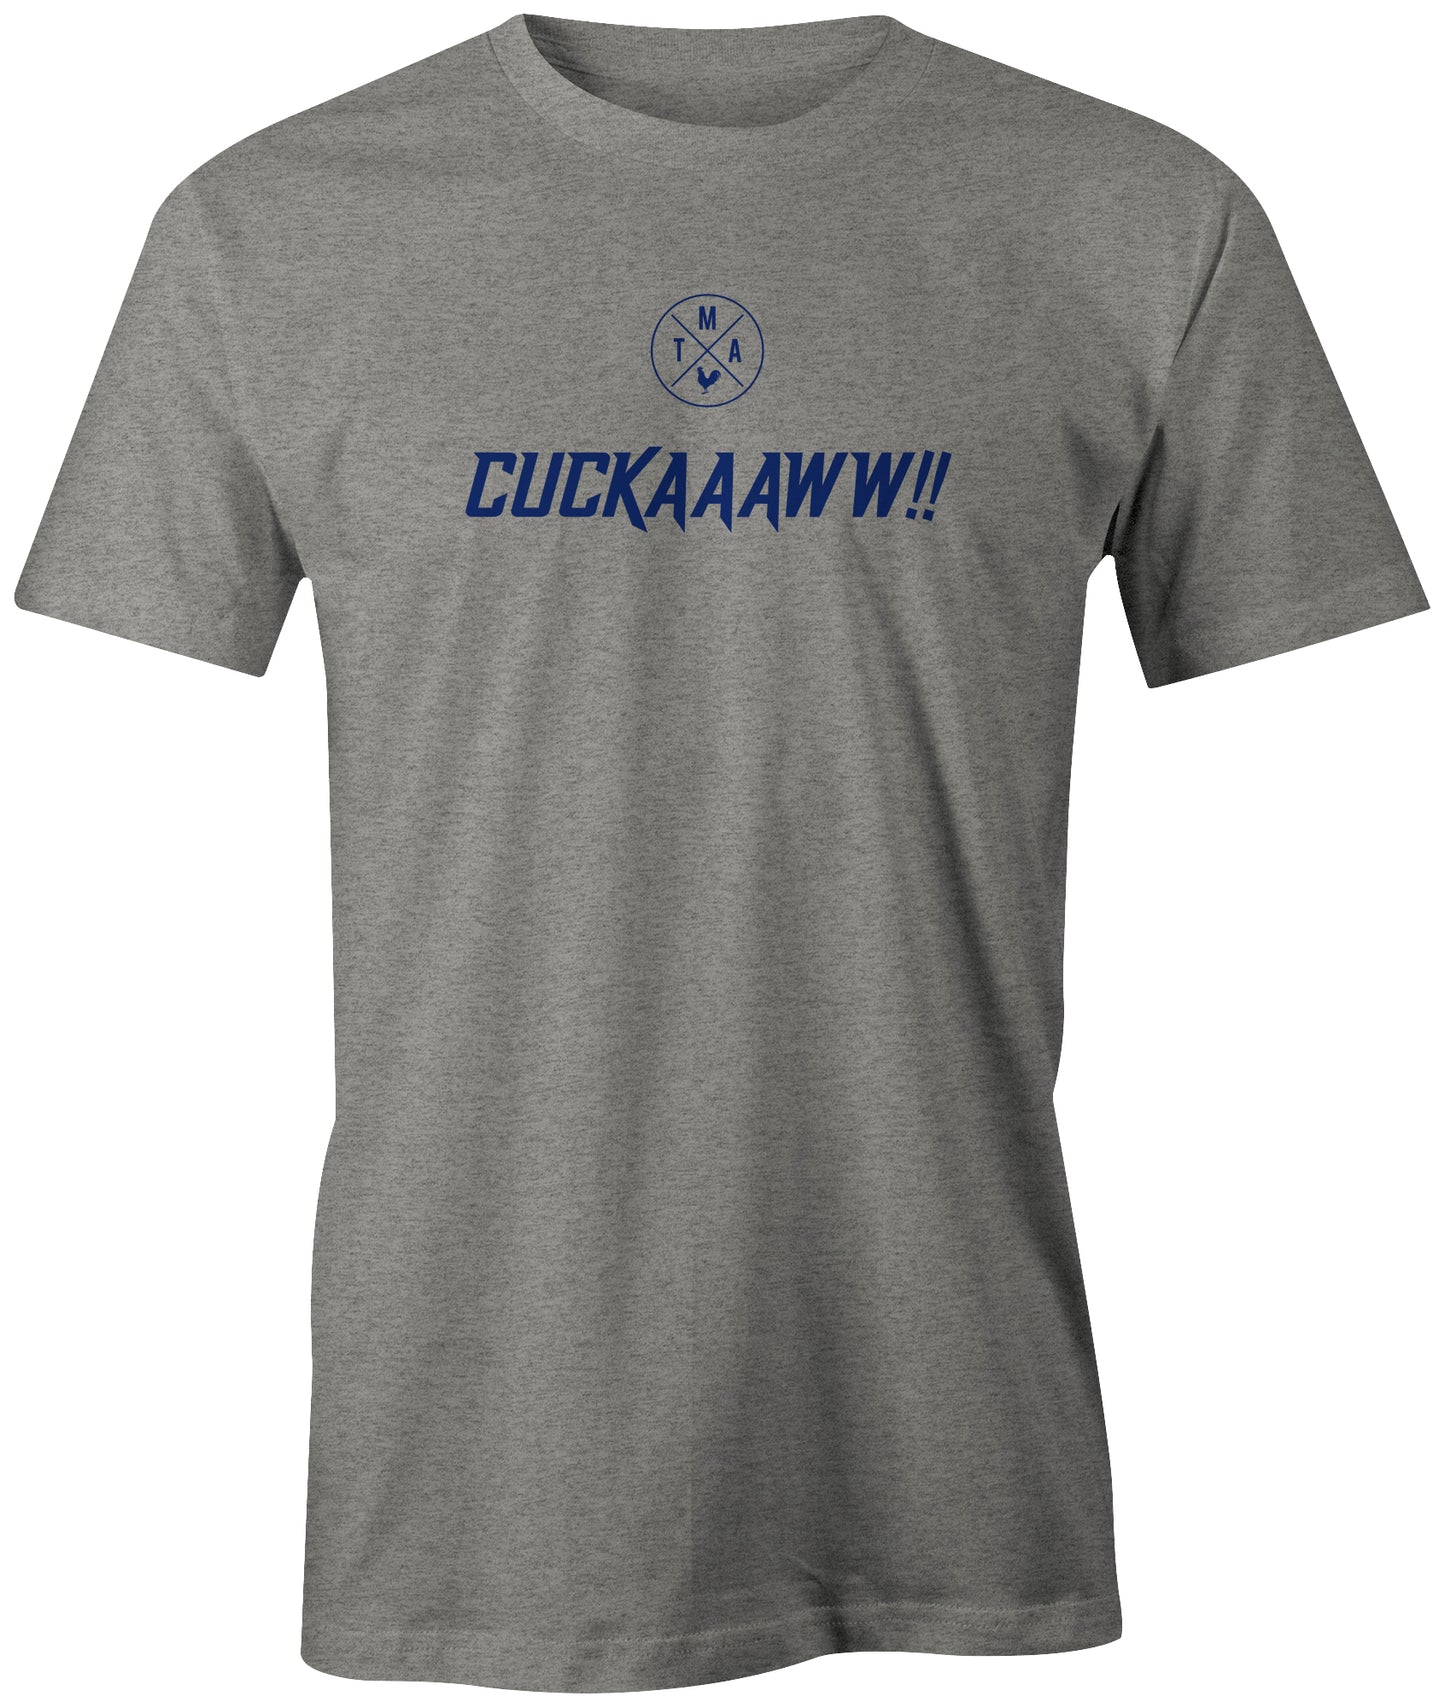 Cuckaaaww! T-shirt